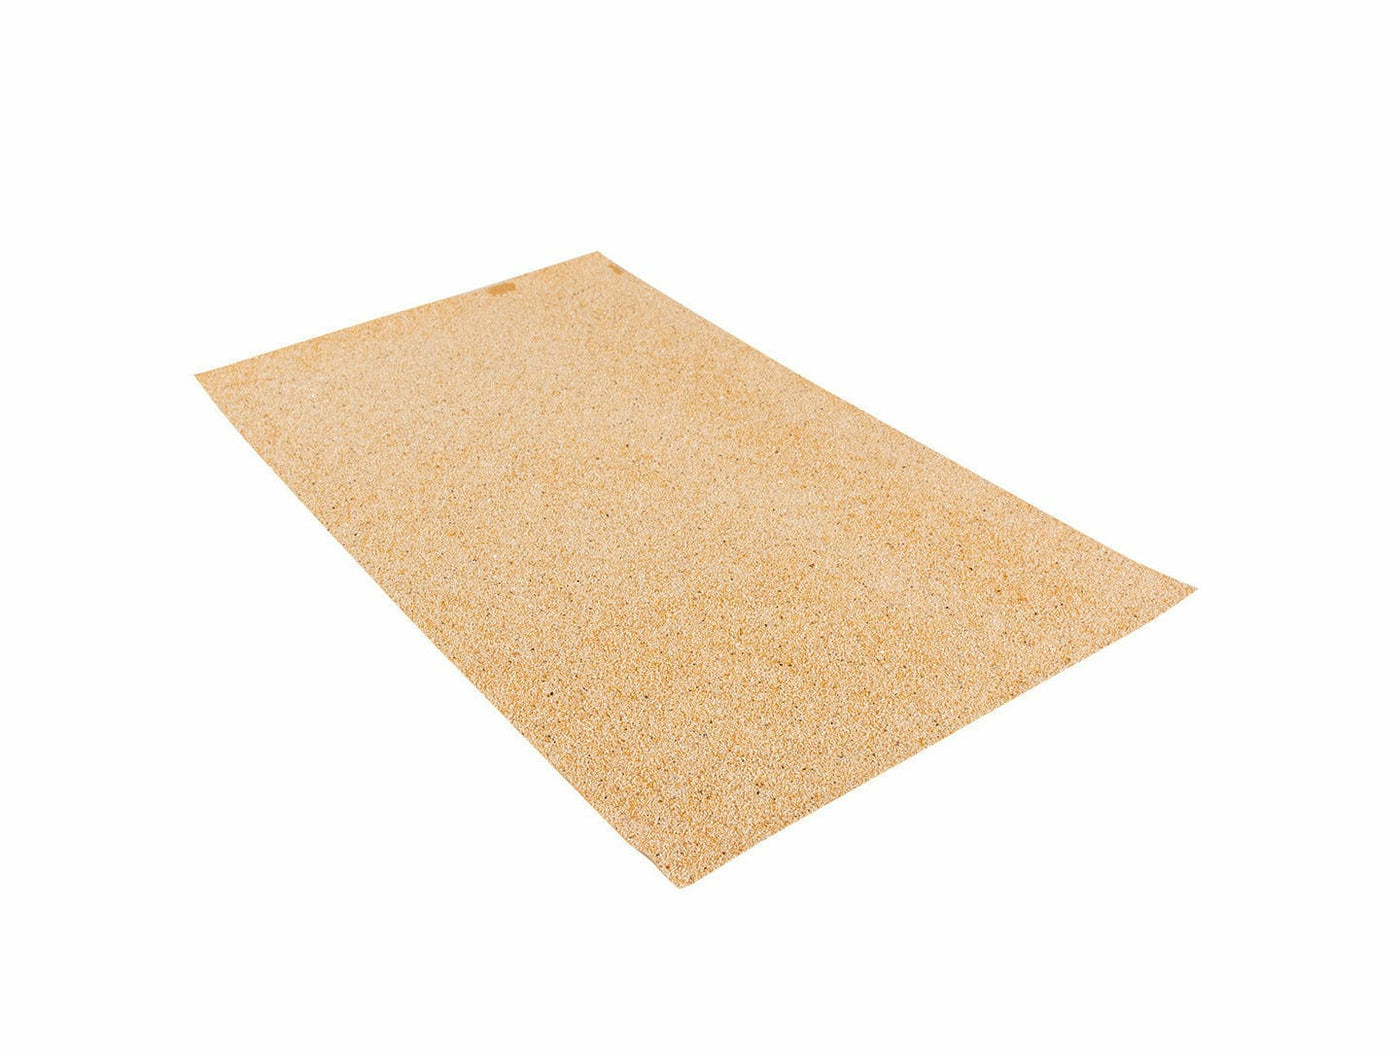 Sand paper cover L - 5pcs - 28x43cm